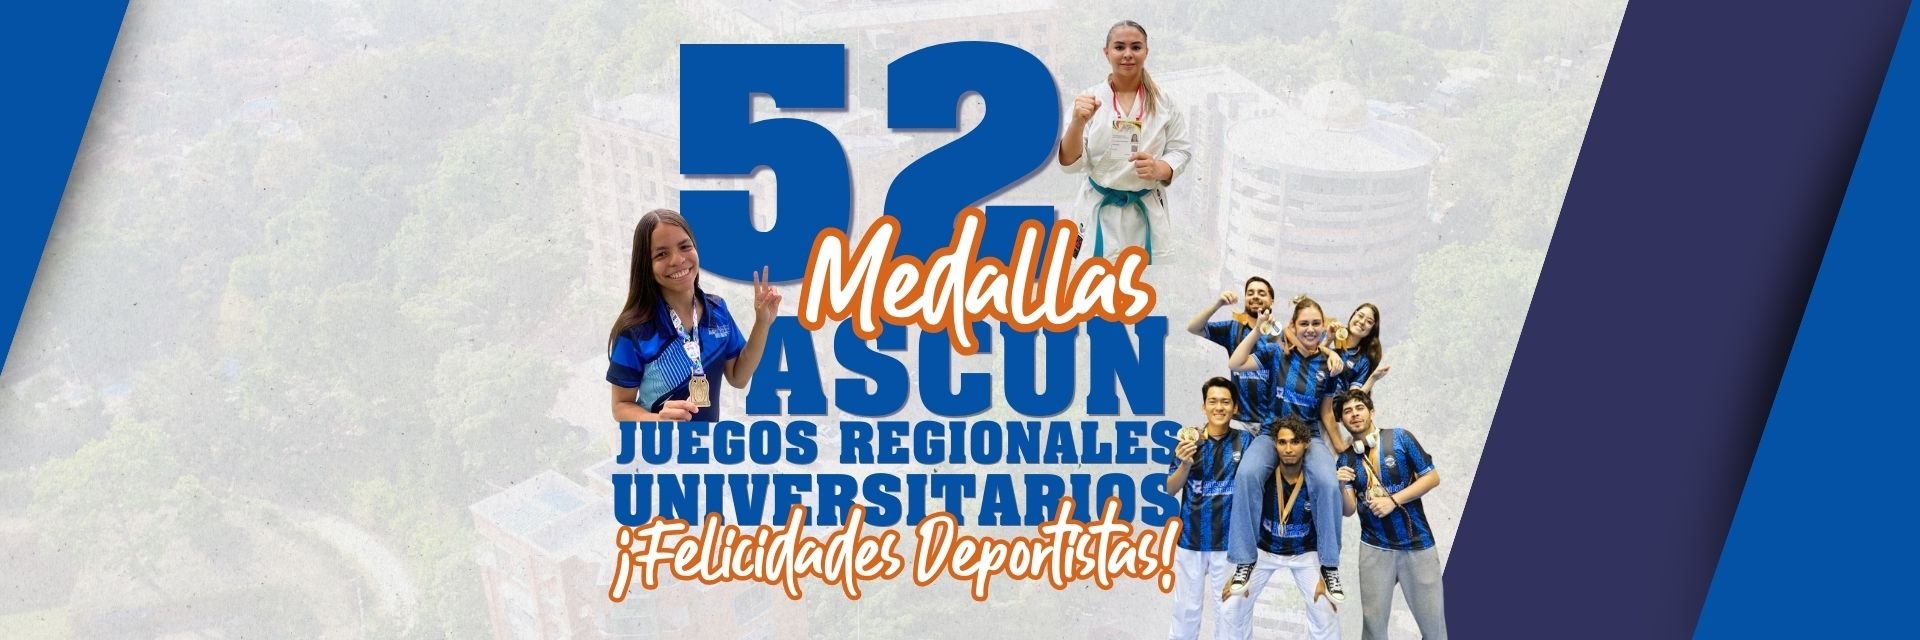 ¡Felicidades deportistas UDES! Nuestros campus sumaron 52 medallas en los Juegos Regionales Universitarios ASCUN